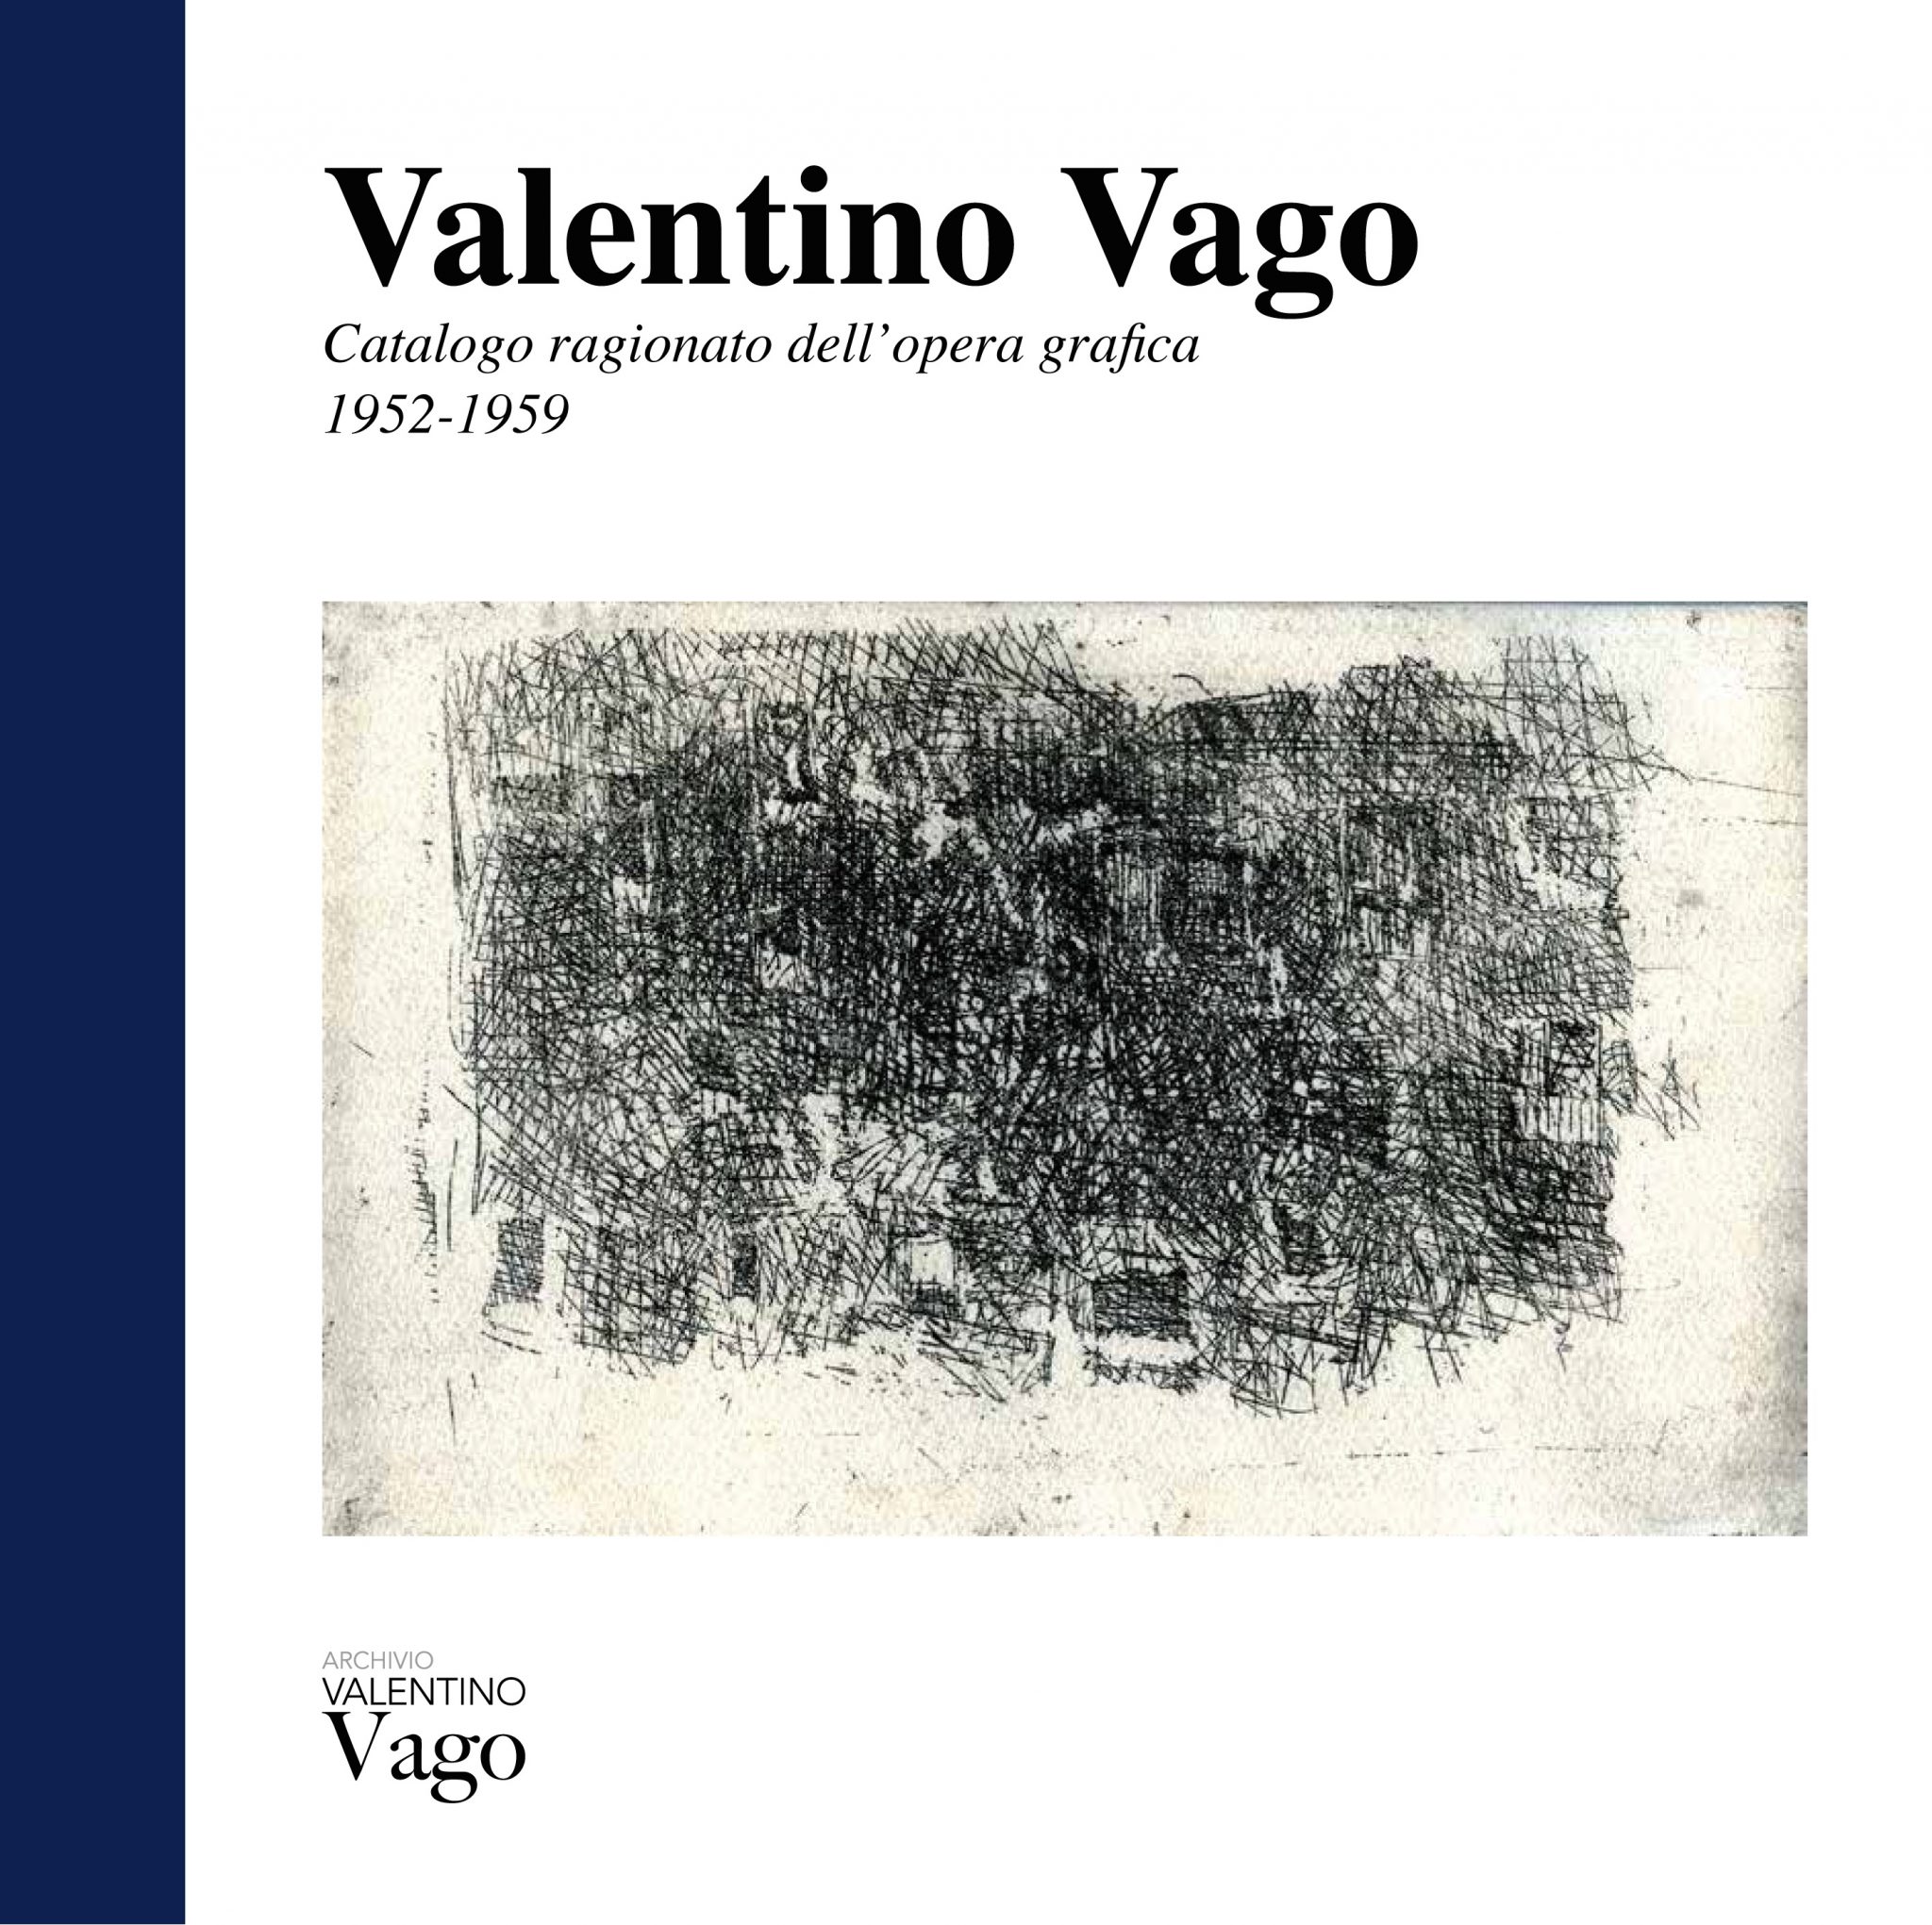 L’opera incisoria di Valentino Vago. Presentazione catalogo ragionato a Milano